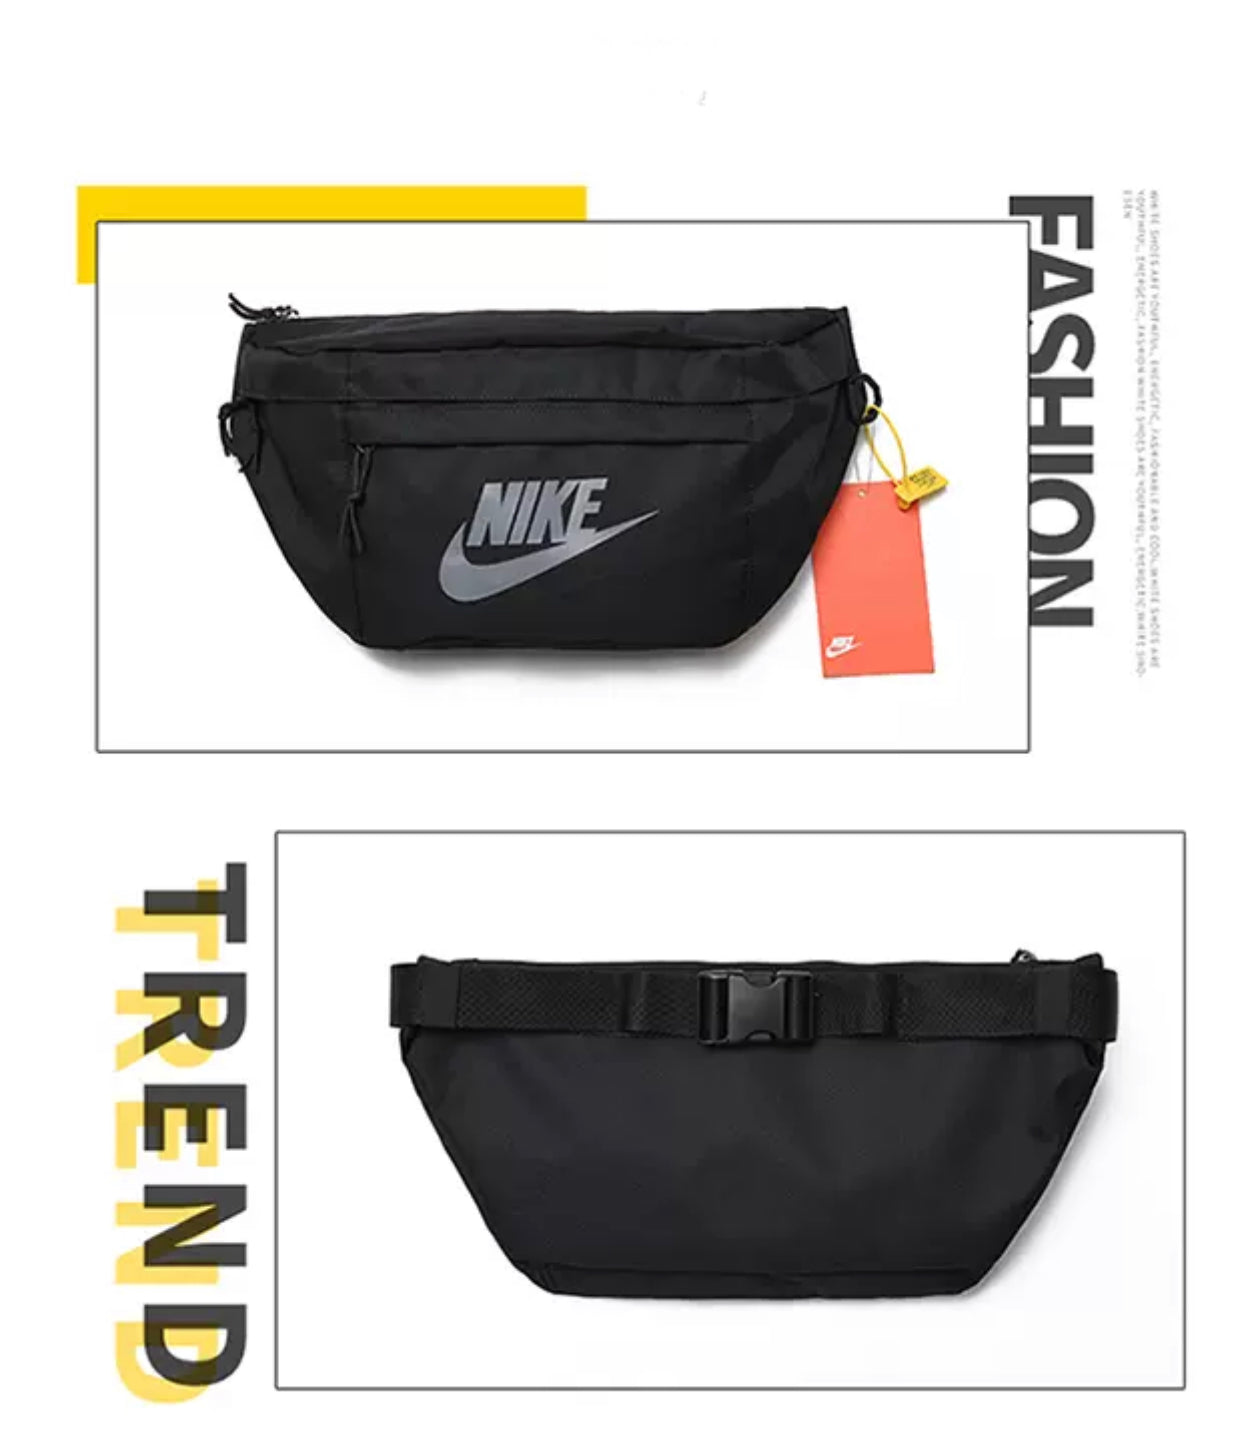 Nike Crossed Bag 2020 Black-Grey